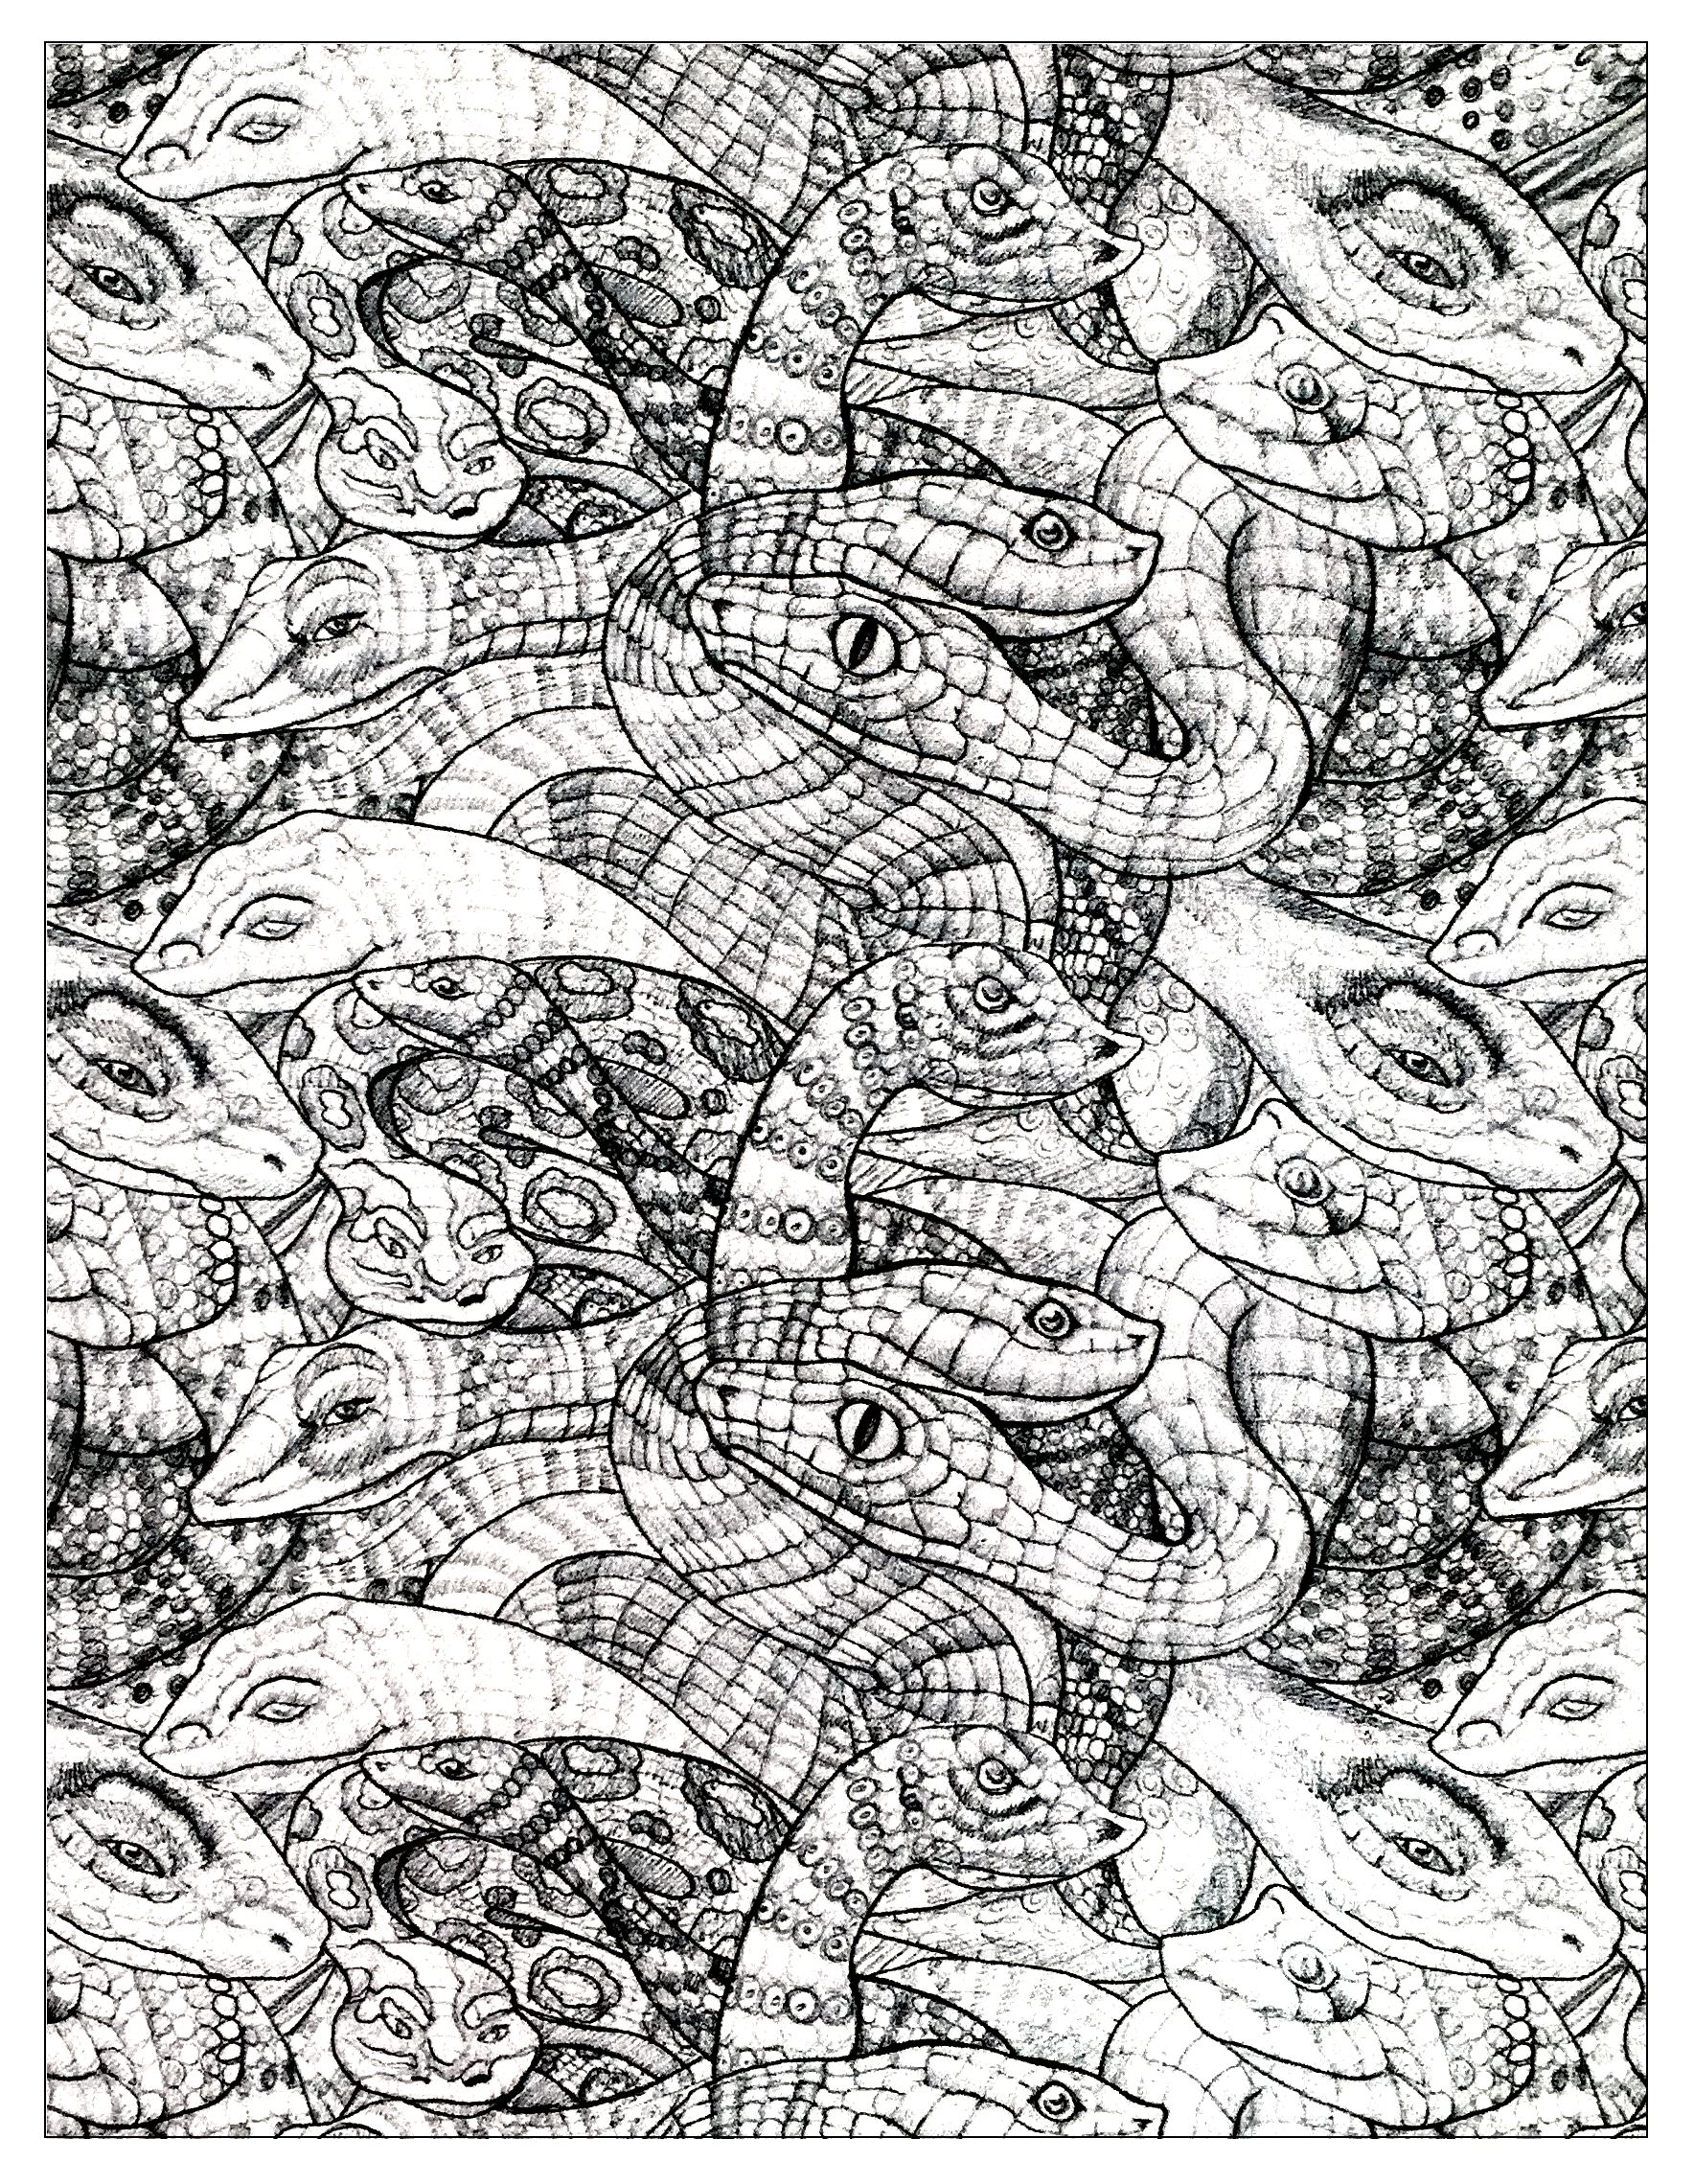 Disegno di serpenti aggrovigliati con squame disegnate in modo preciso e realistico